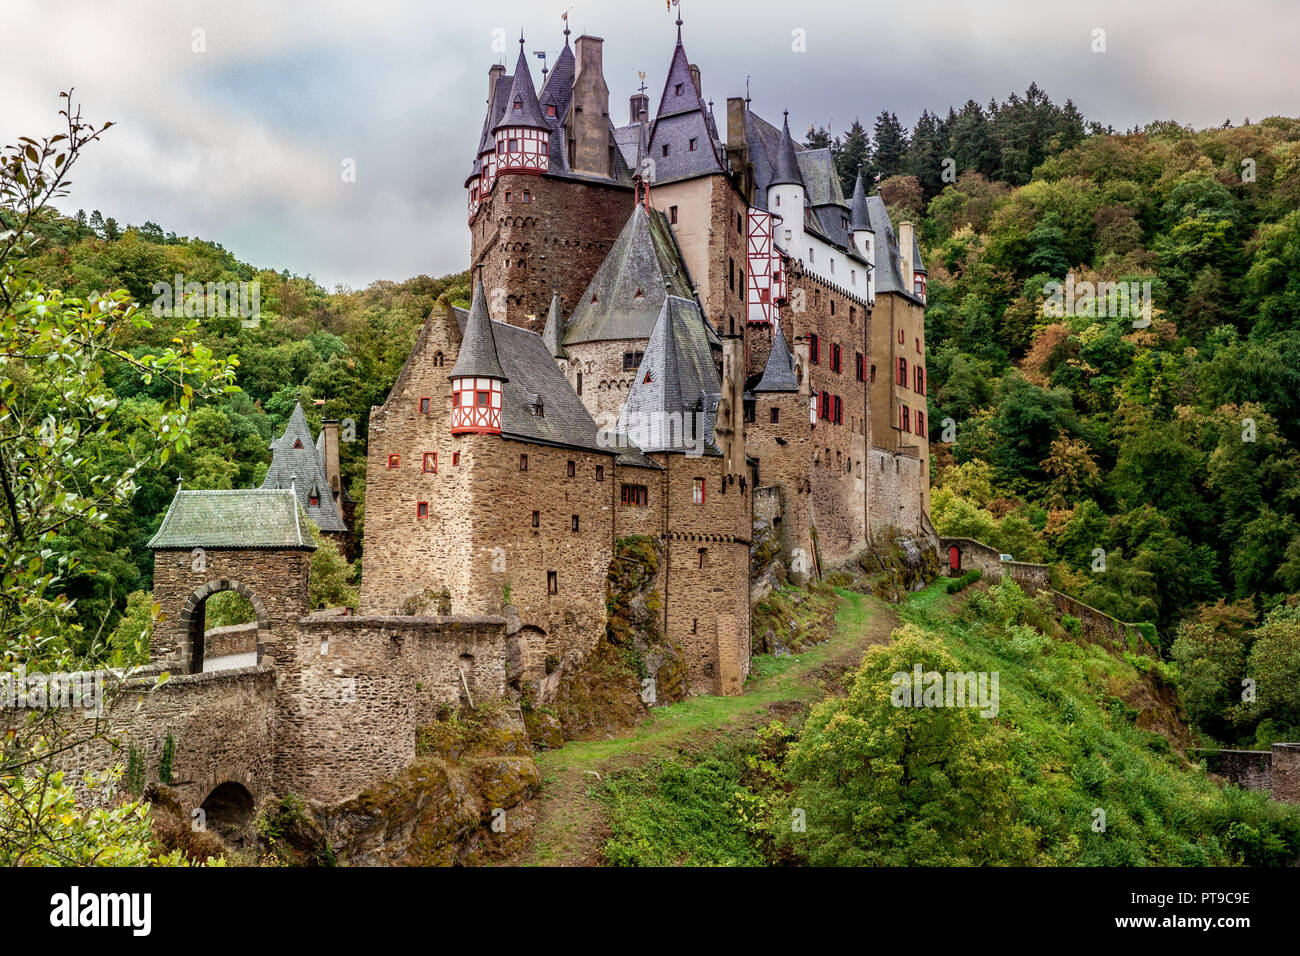 Burg Eltz en el Eifel, uno de los castillos más famosos de Alemania Renania Palatinado Foto de stock